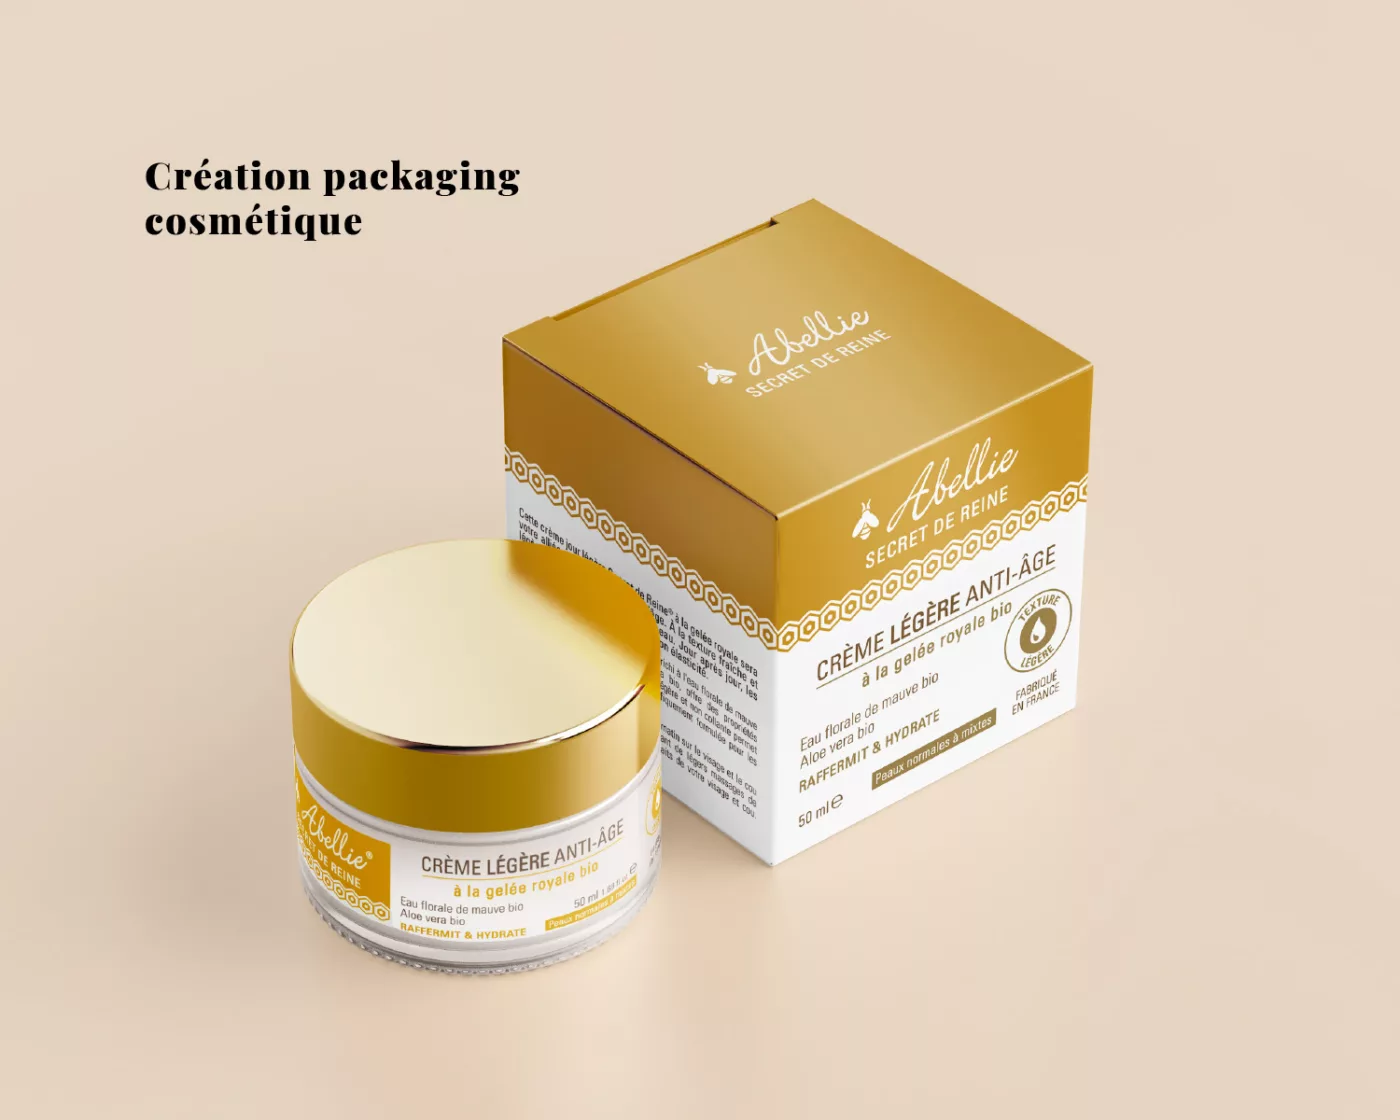 Création des packagings de la gamme cosmétique Secret de Reine Abellie, étiquettes des crèmes et étuis